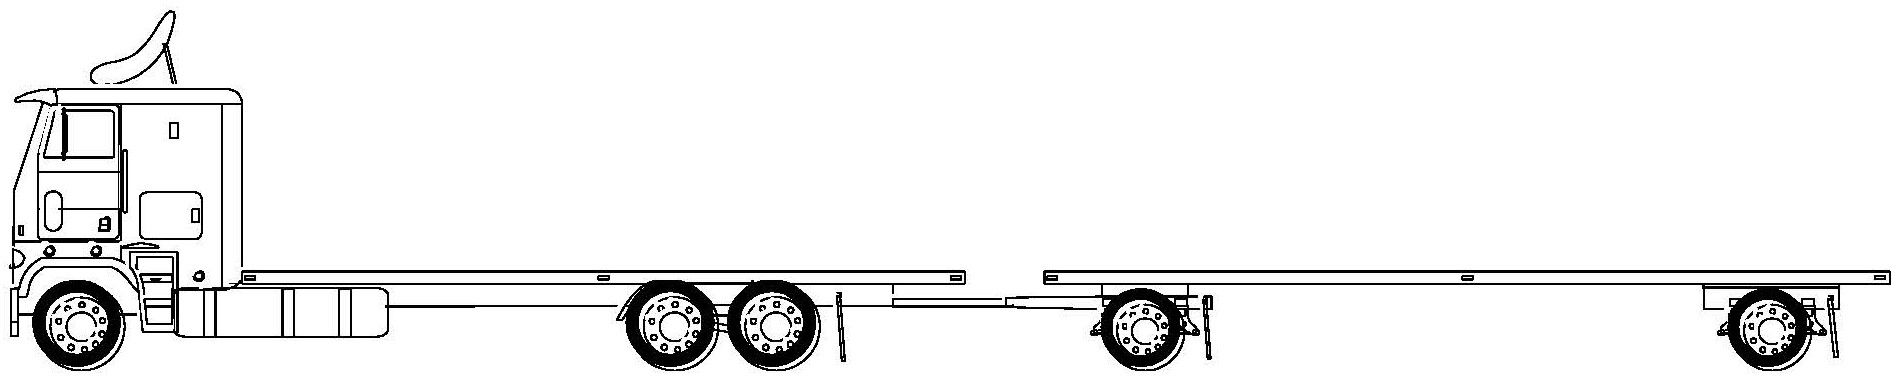 TruckandTrailerLength–Group1.jpg